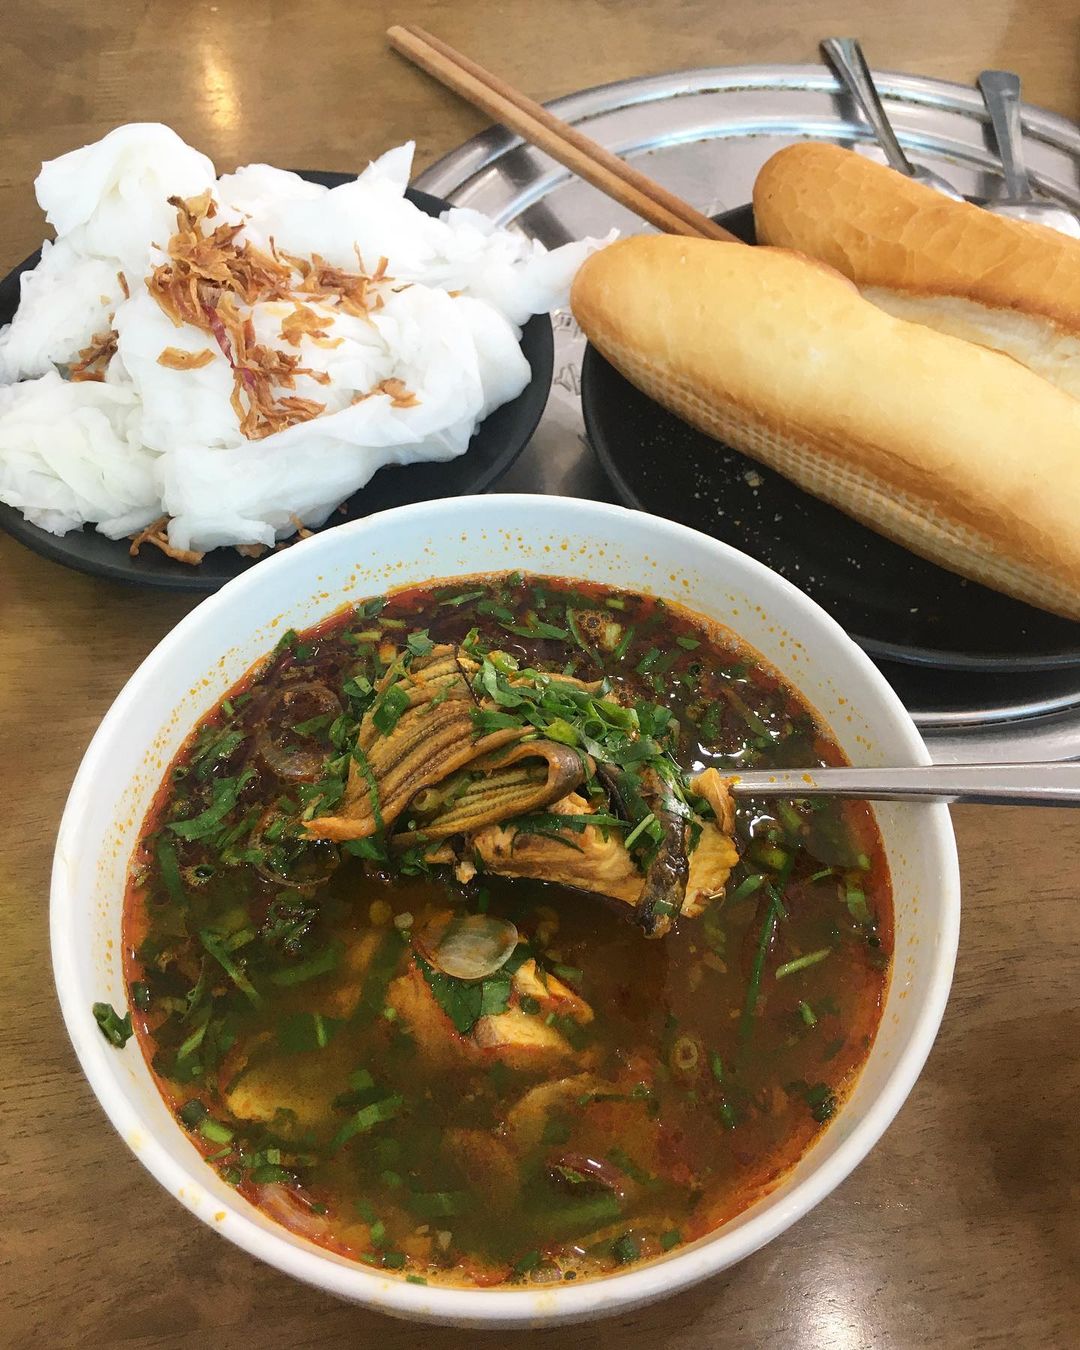 Súp lươn là món ăn sáng dân dã của người dân xứ Nghệ. - Ảnh: realthtaws